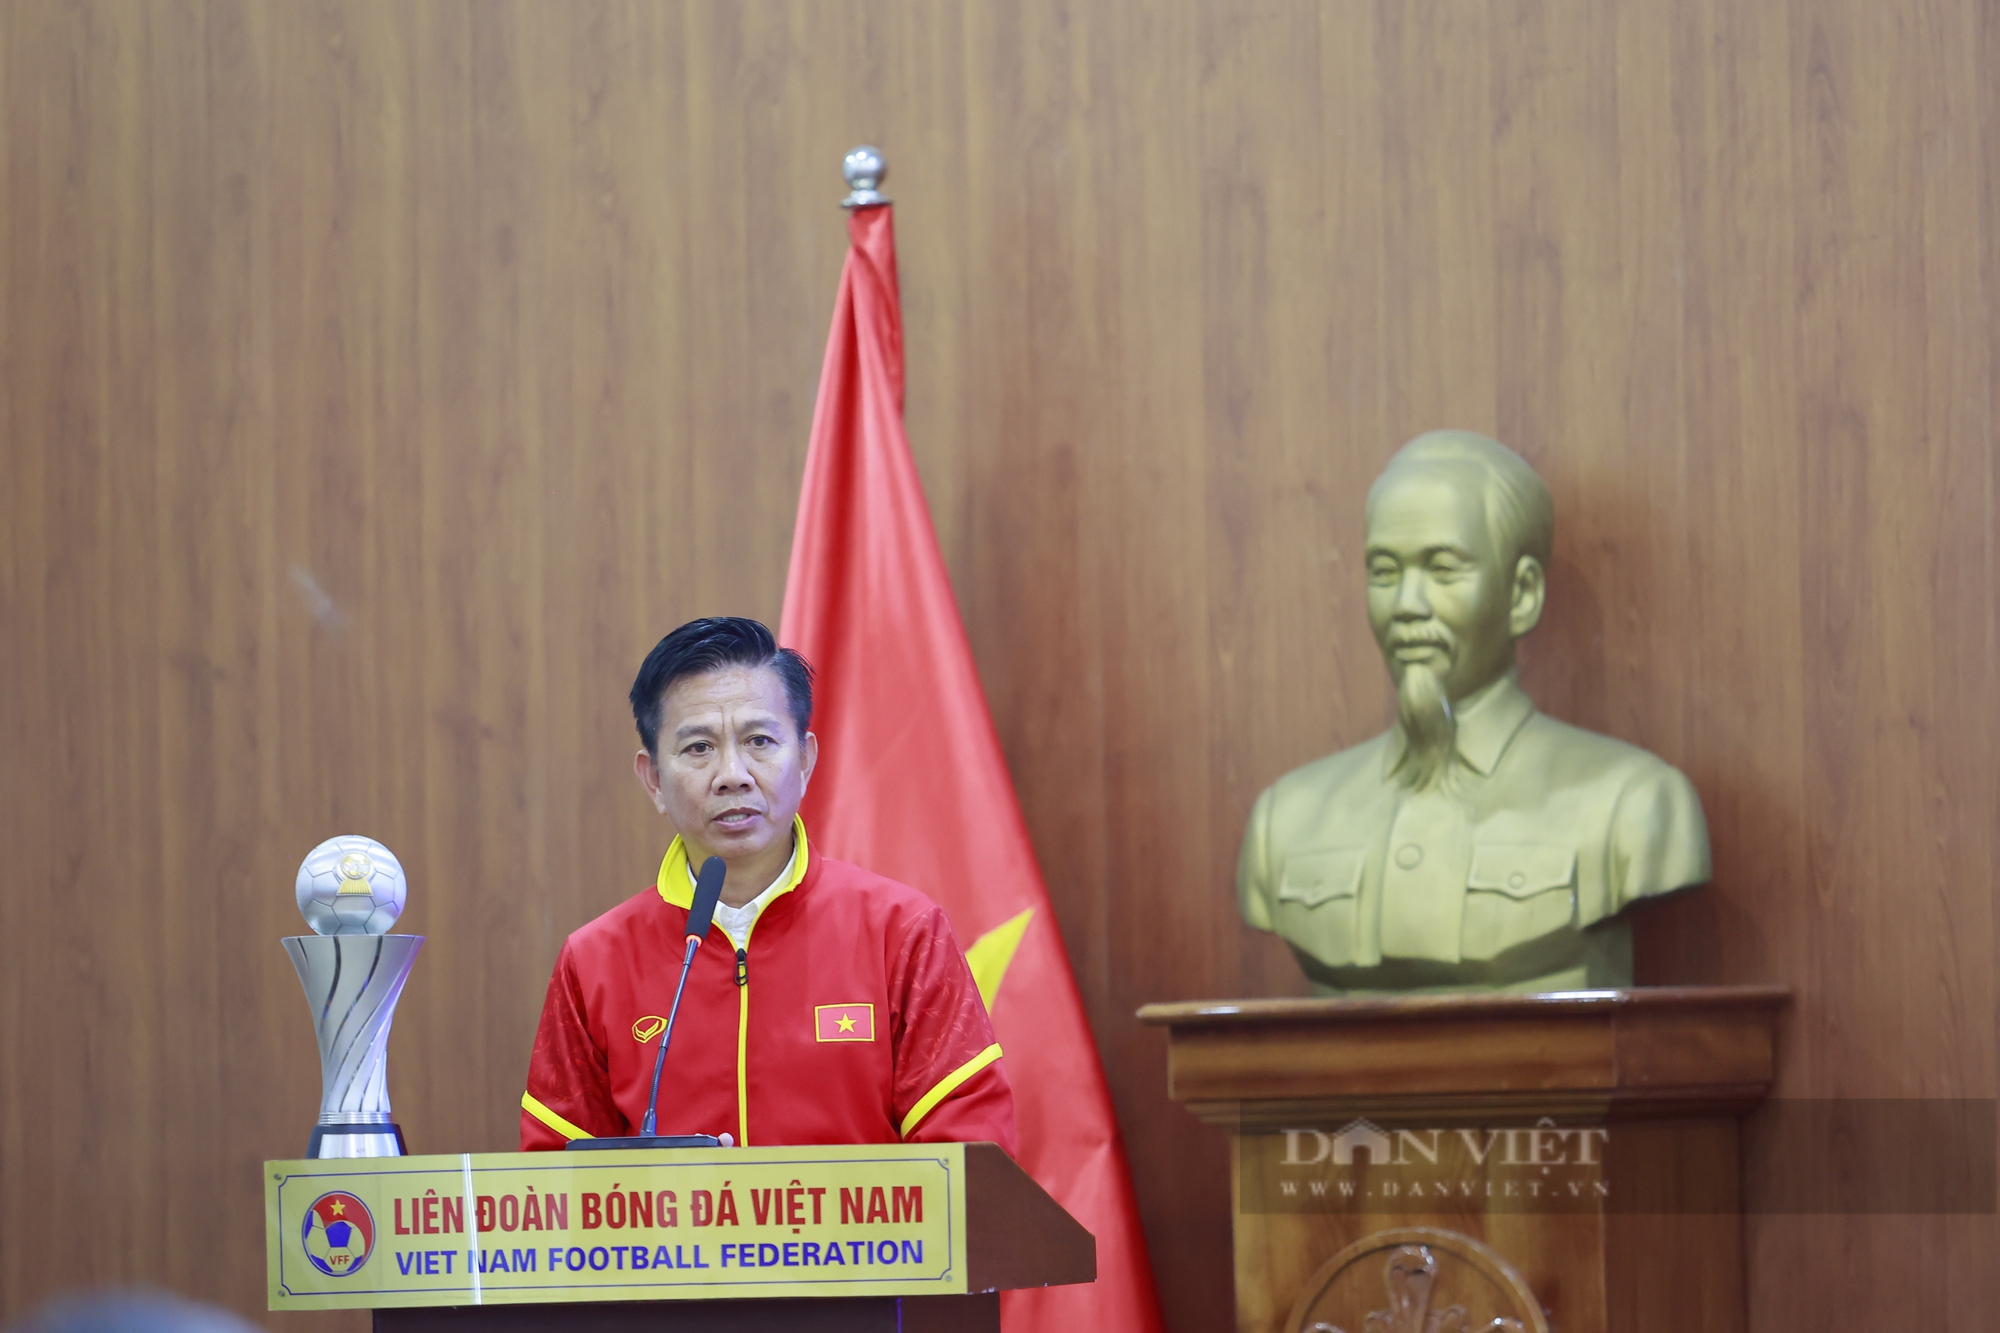 Đinh Xuân Tiến cùng các cầu thủ hớn hở khi xem lại khoảnh khắc ghi bàn tại giải U23 Đông Nam Á - Ảnh 2.